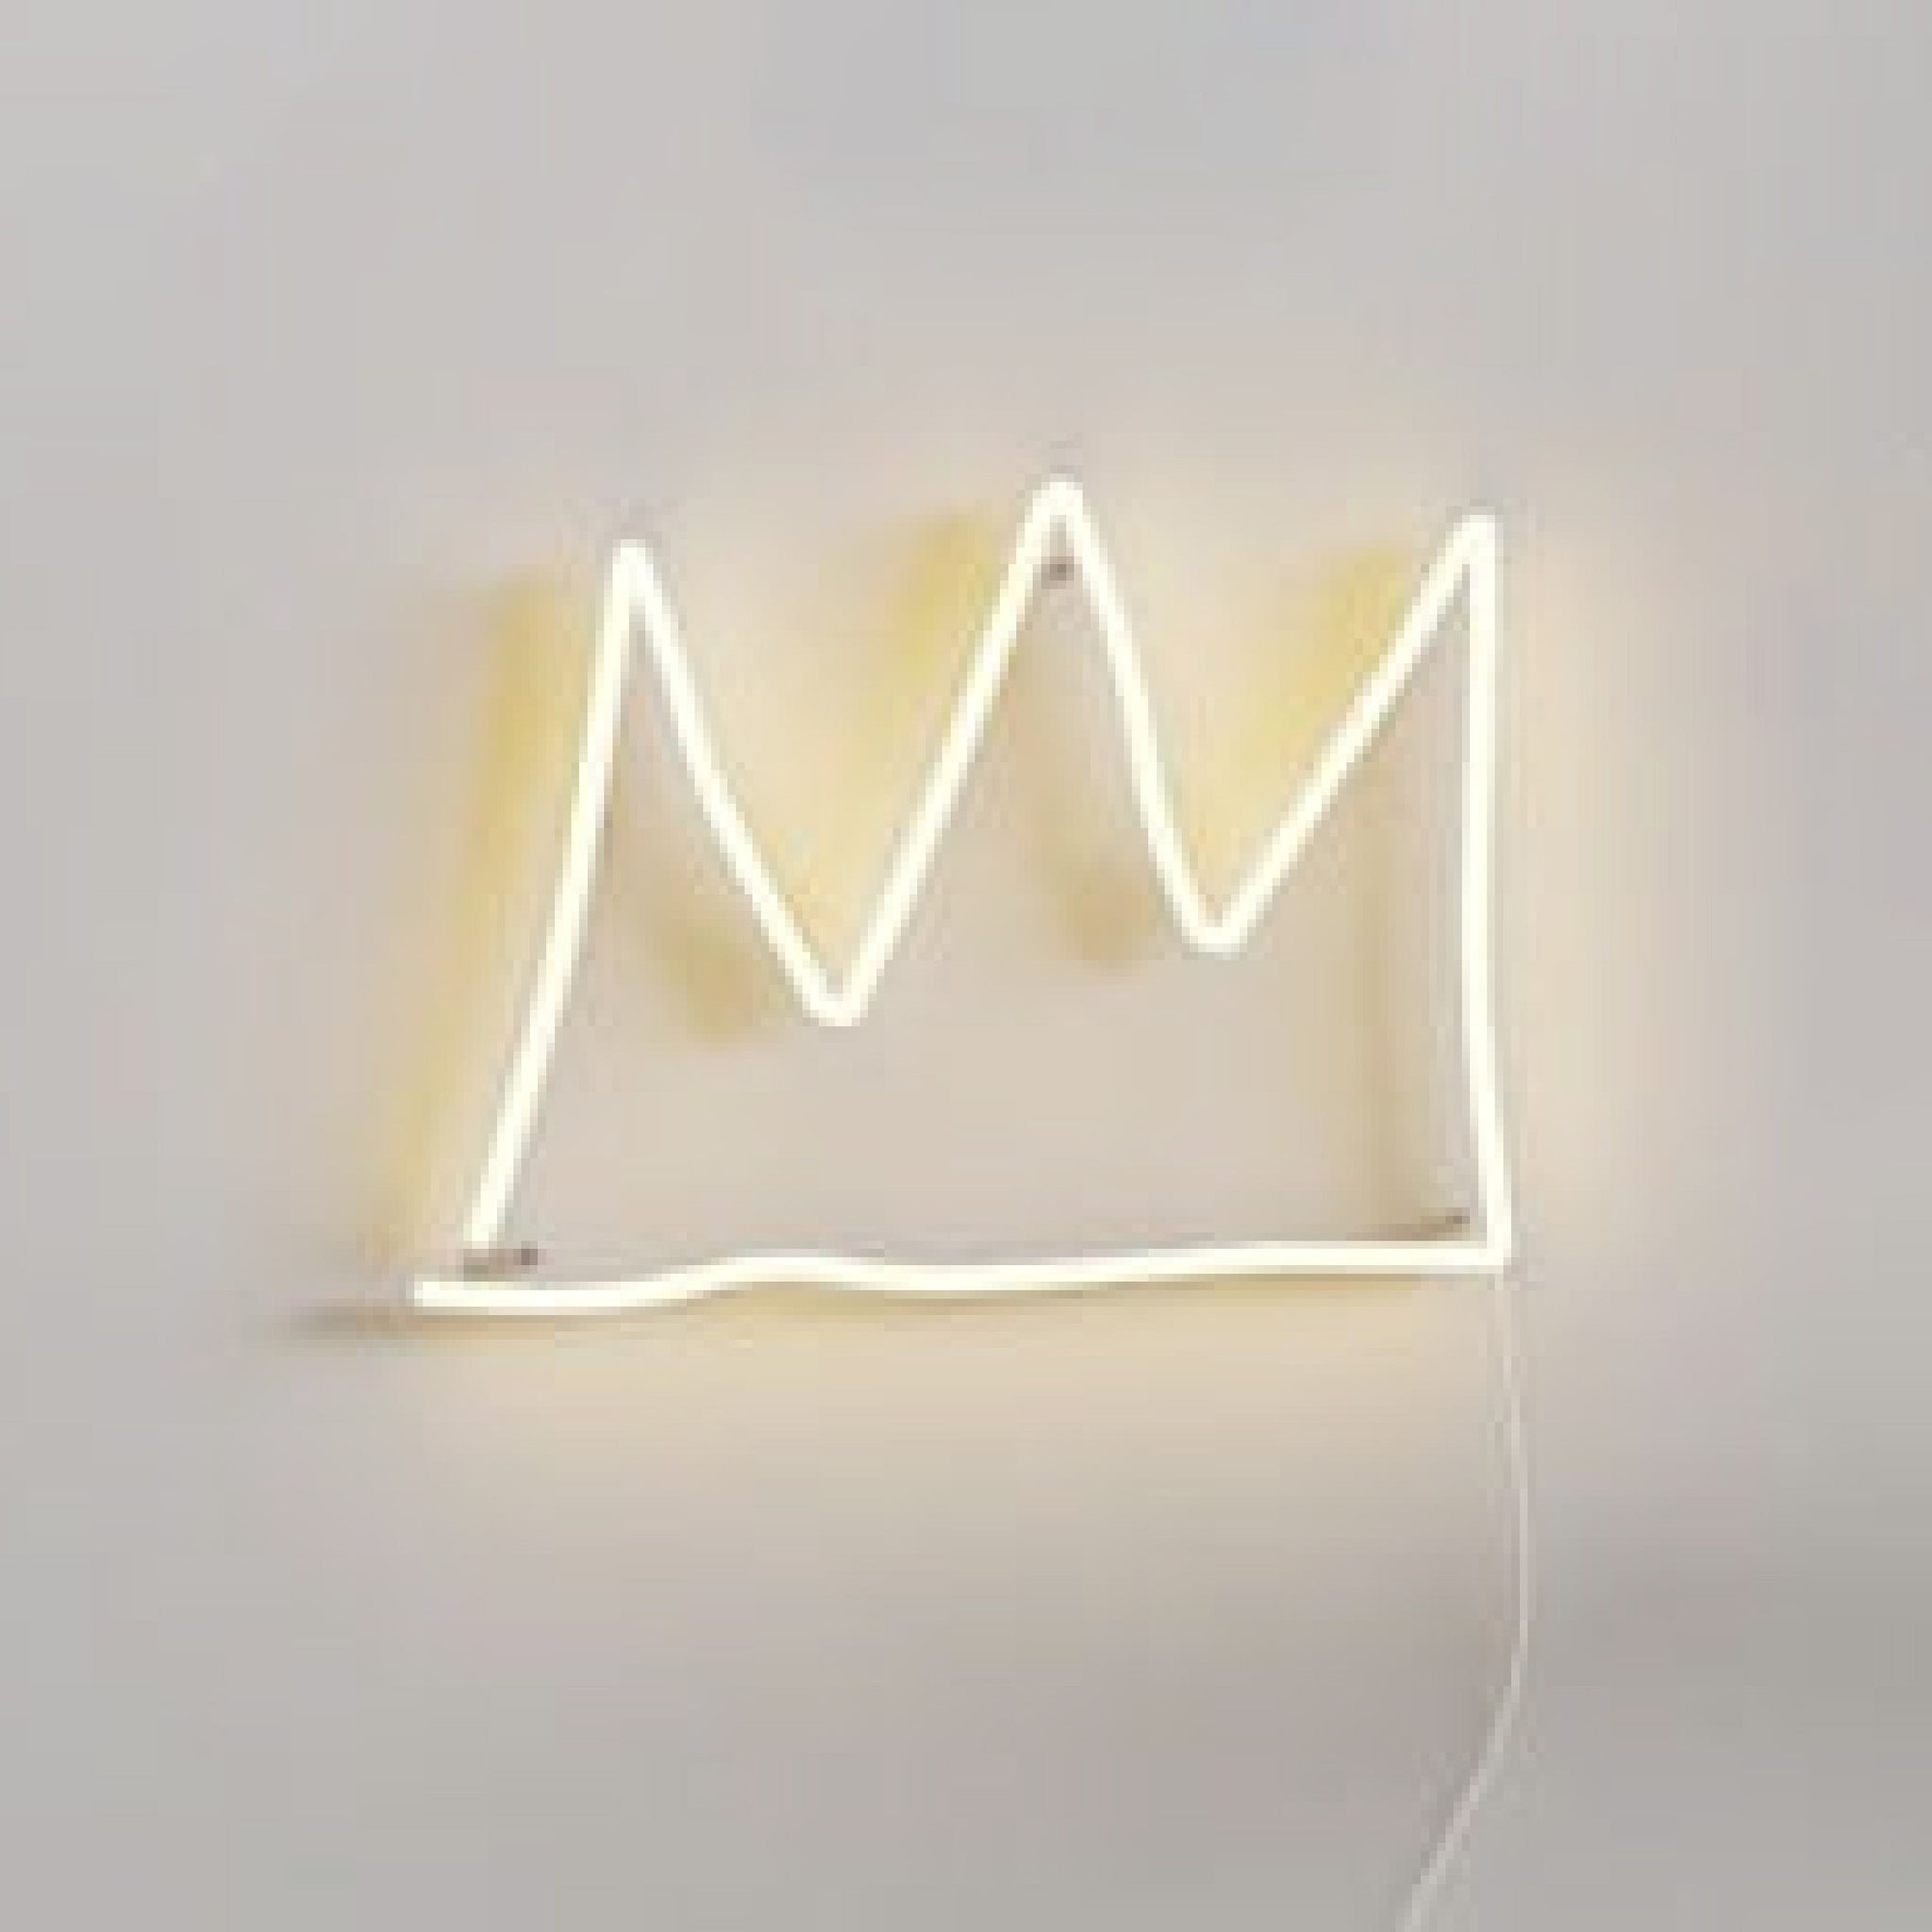 The Crown YP x Jean Michel Basquiat